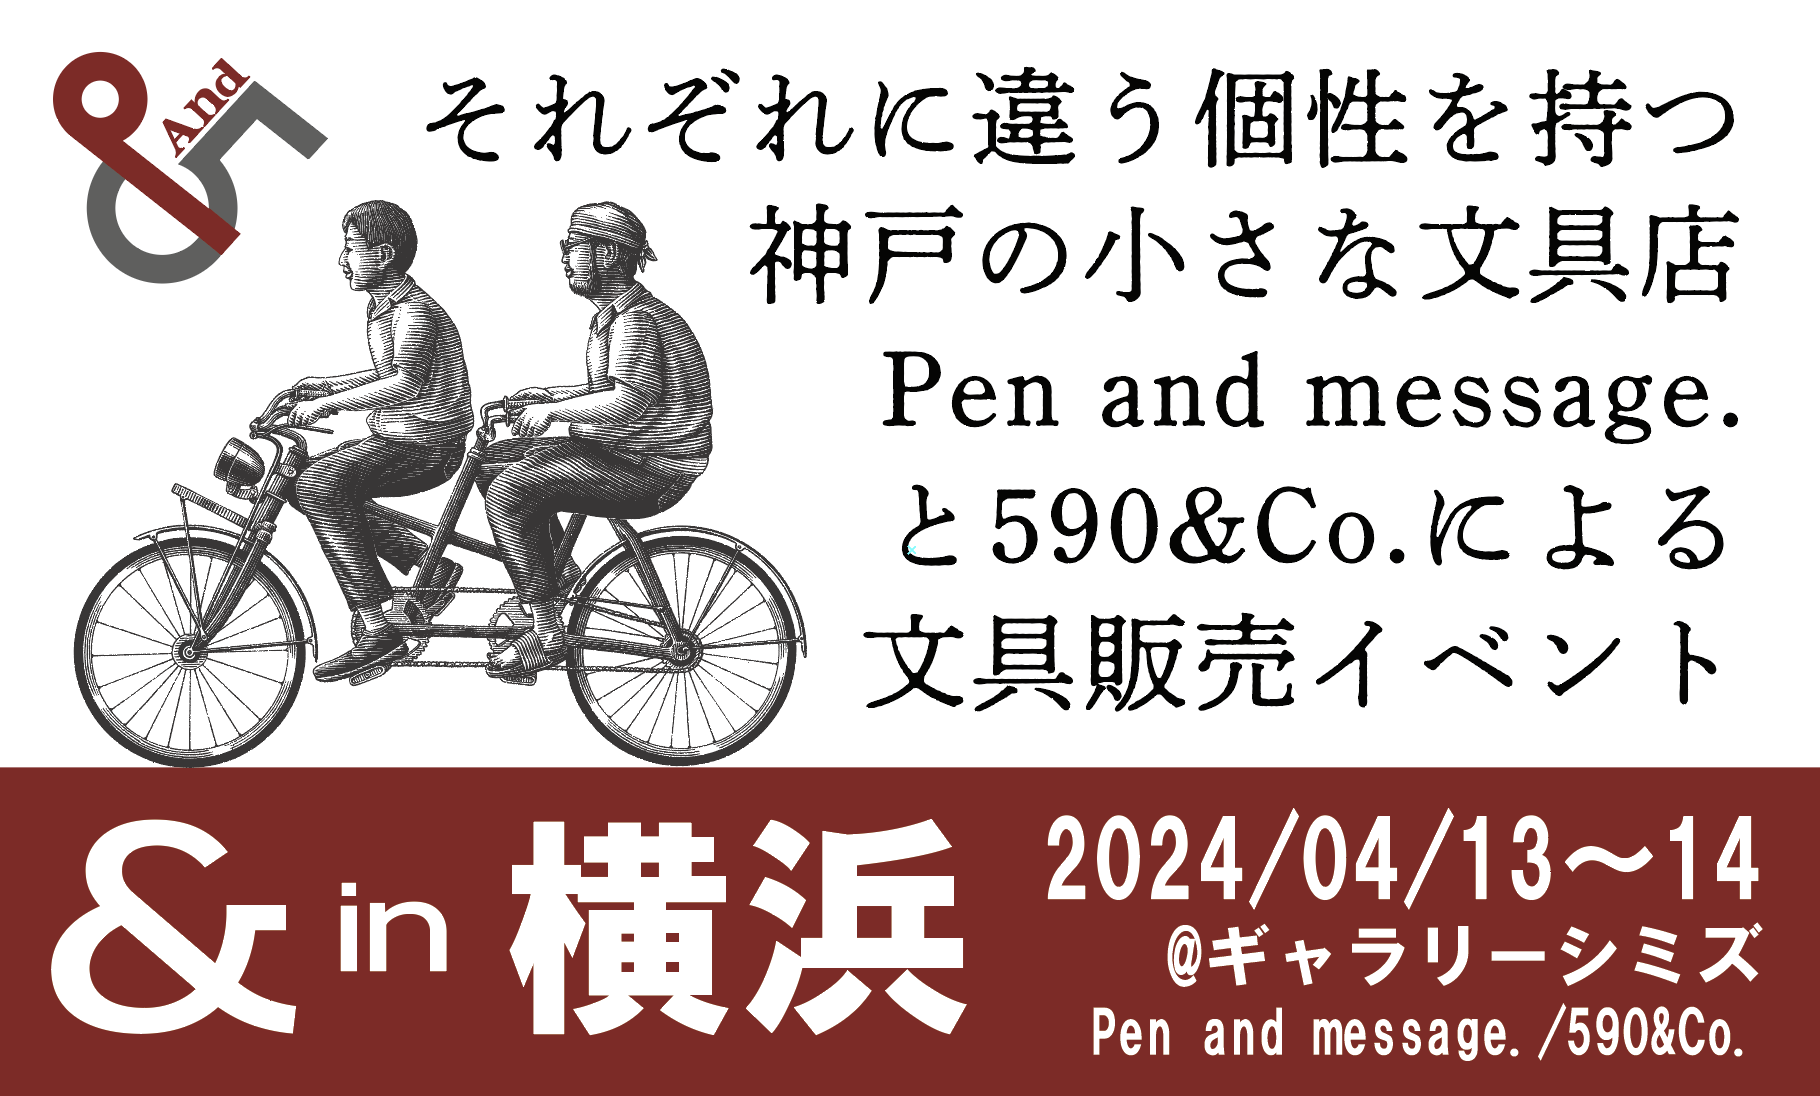 2024/04/13〜14に出張販売イベント”＆”in 横浜を開催致します